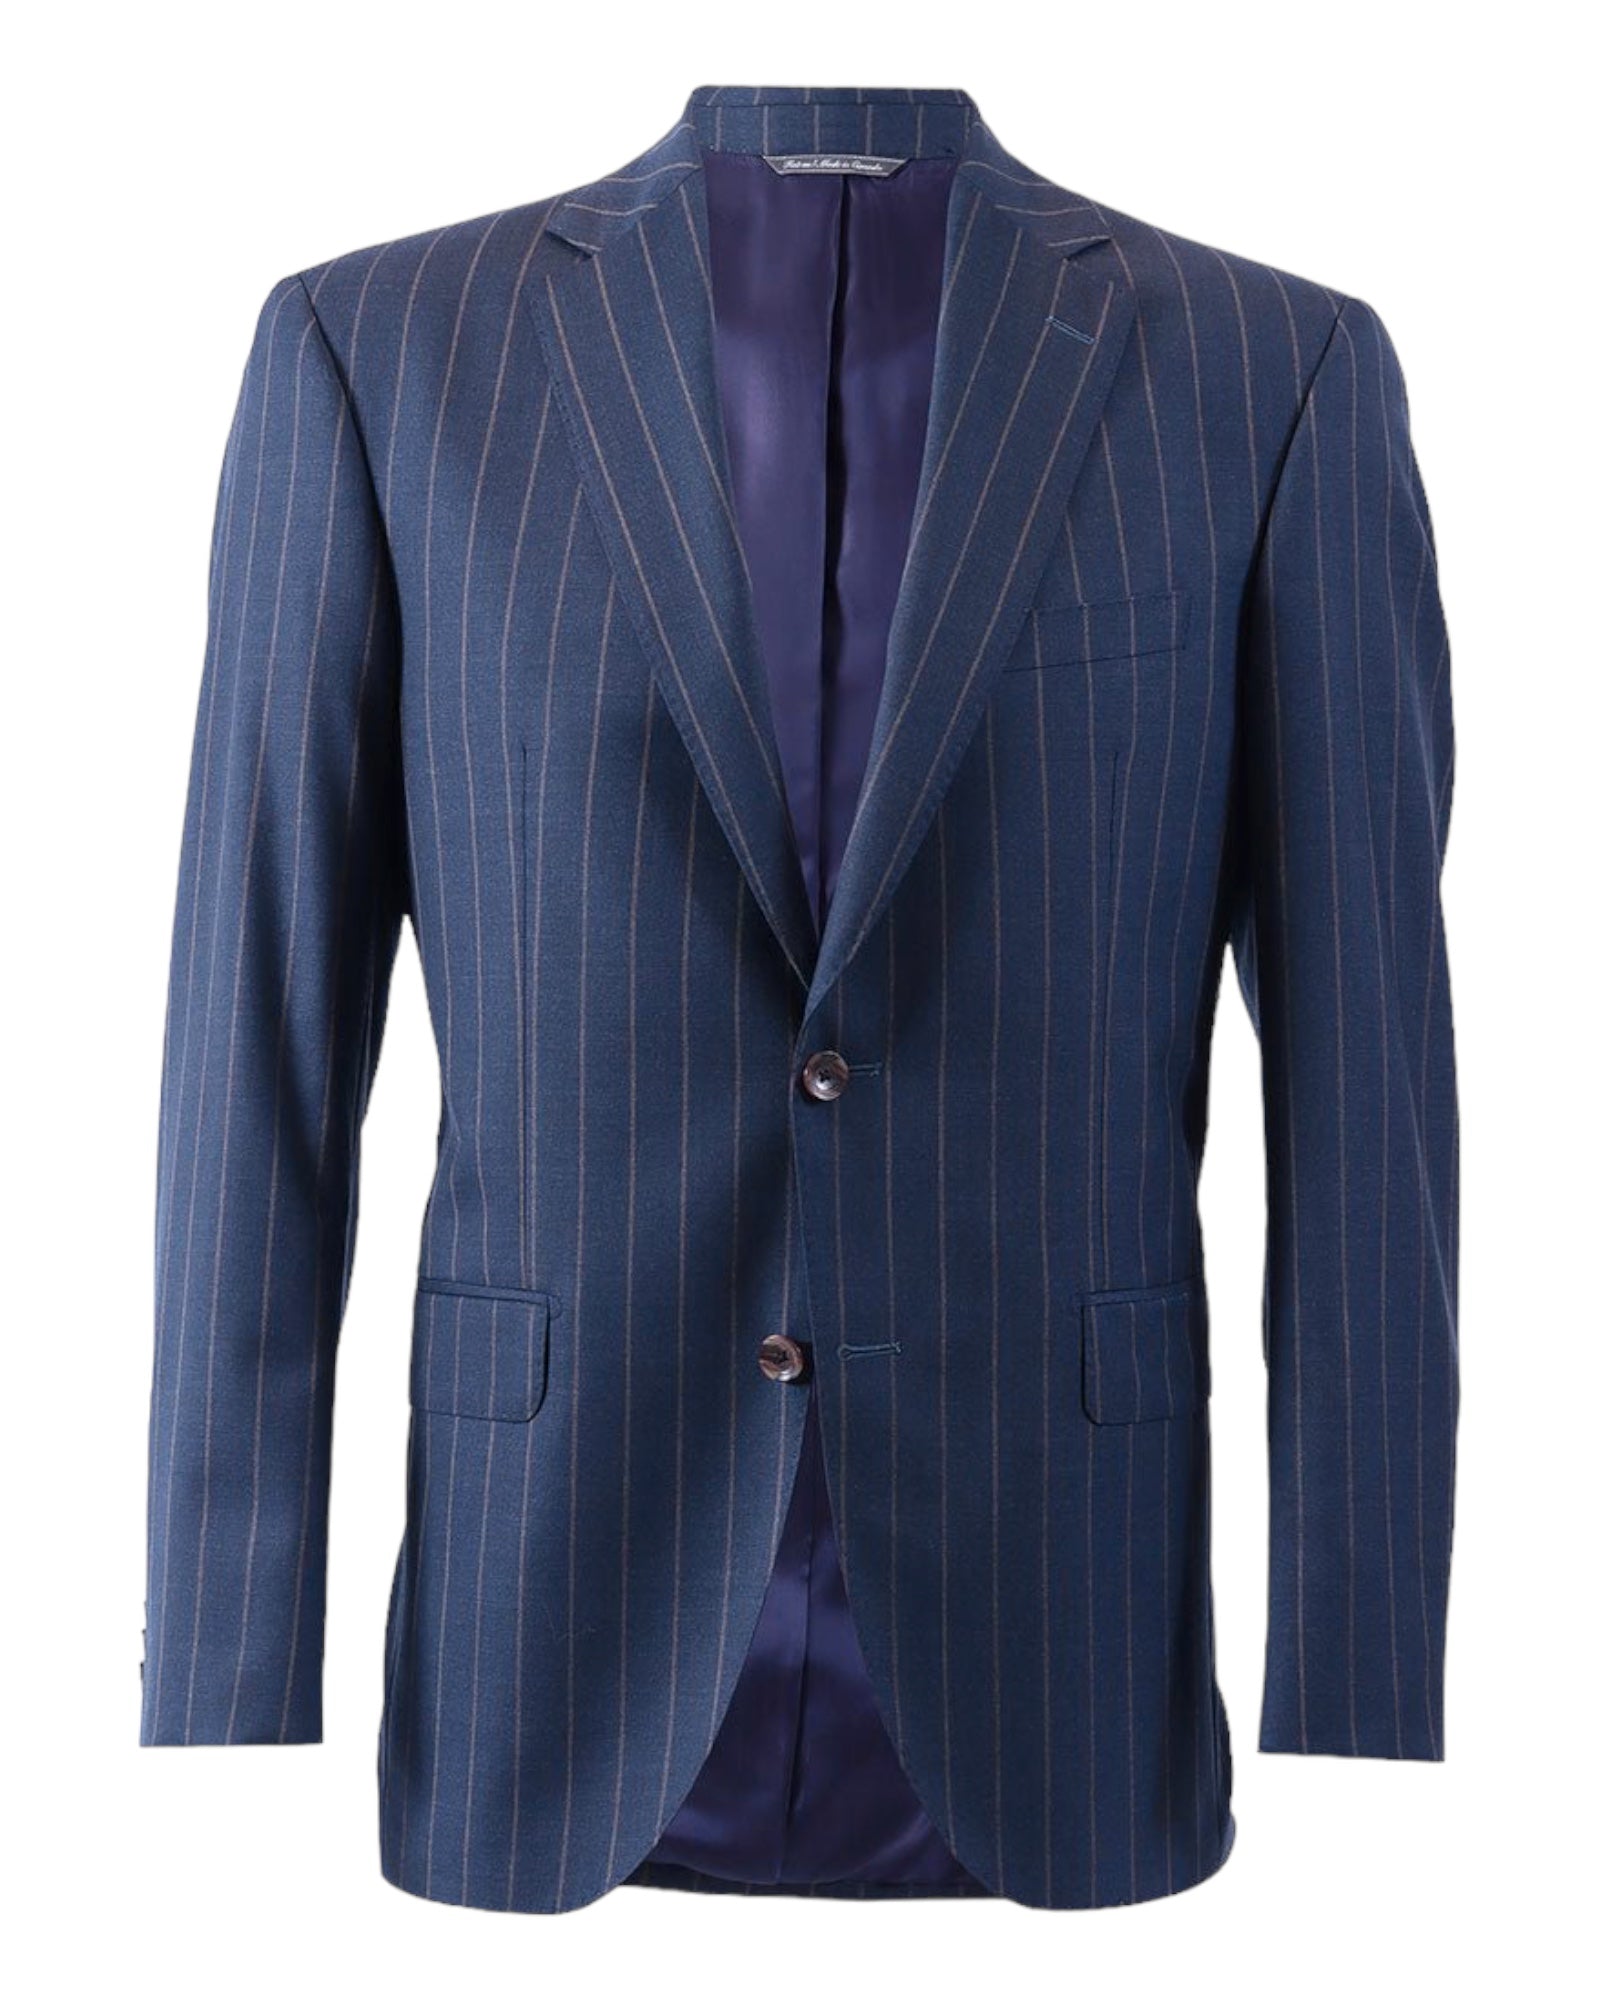 Chalk Stripe Suit - Blue, Taupe SUITS40R